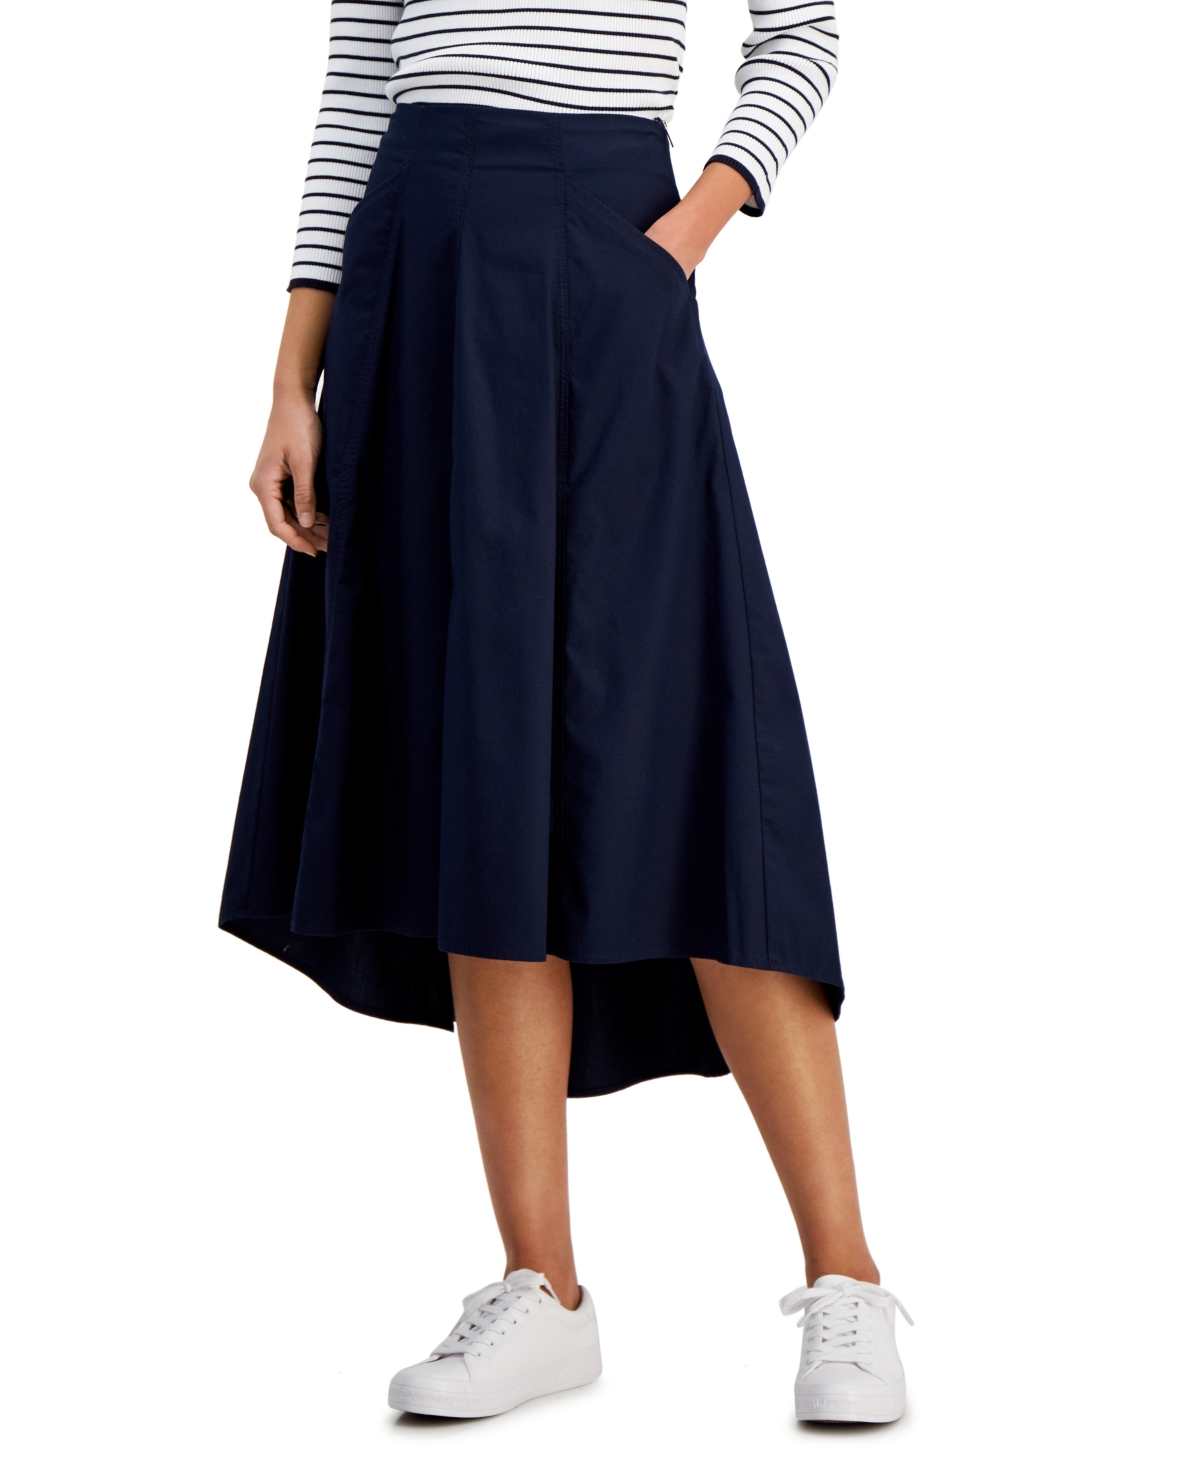 Women's High-Low Midi Skirt - Blue